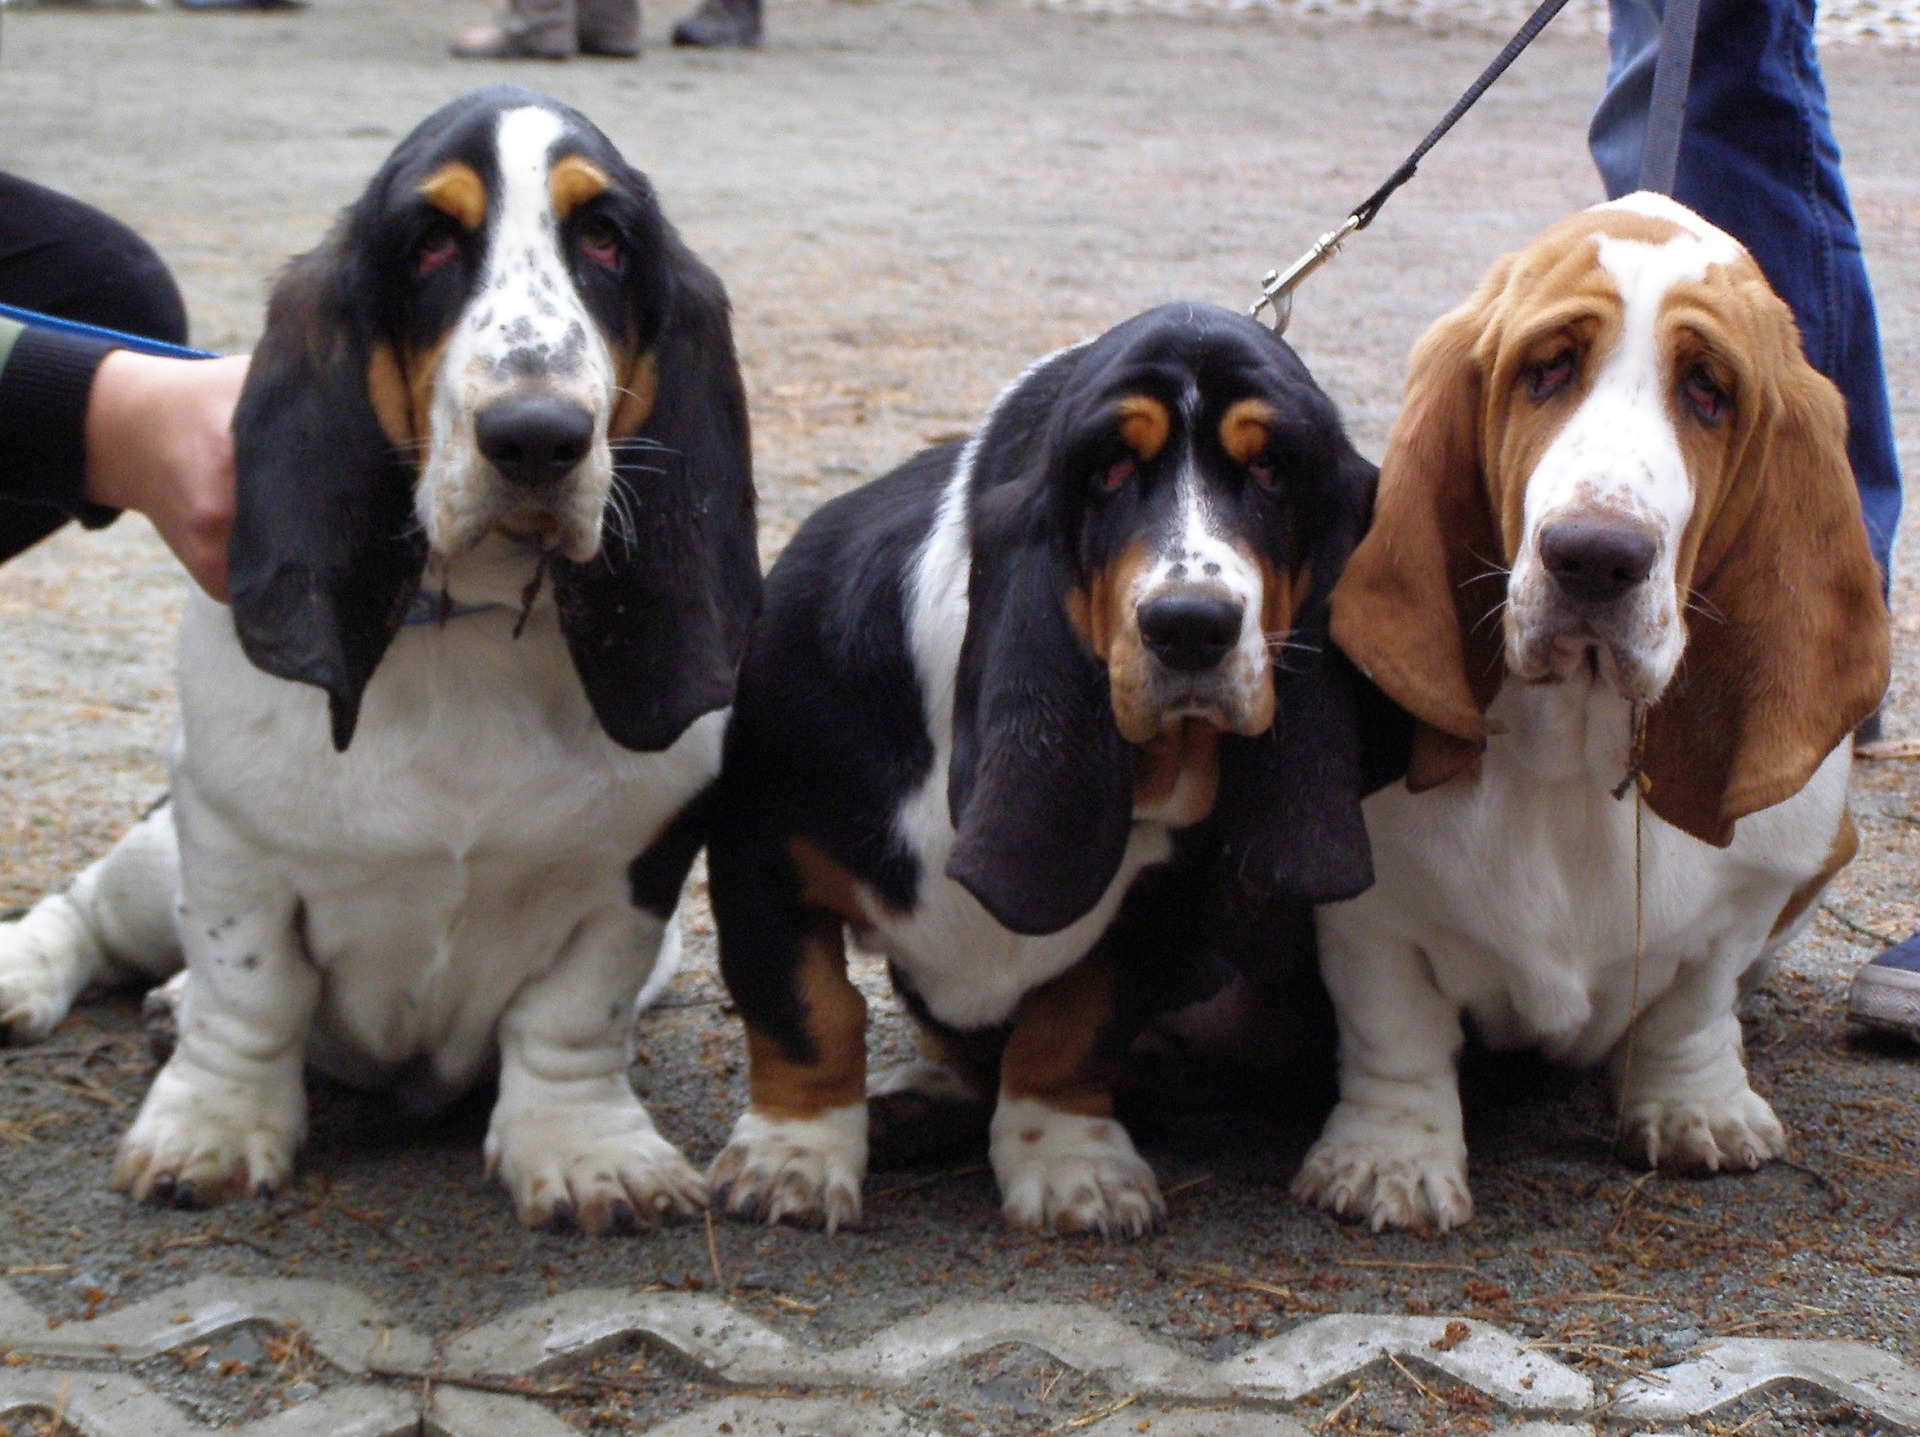 Basset stanowi połączenie psów ras francuskich - bloodhounda (duża głowa z nadmierną i pofałdowaną skórą), foxhounda (umaszczenie) oraz jamnika (krótkie nogi i dłuższy tułów).